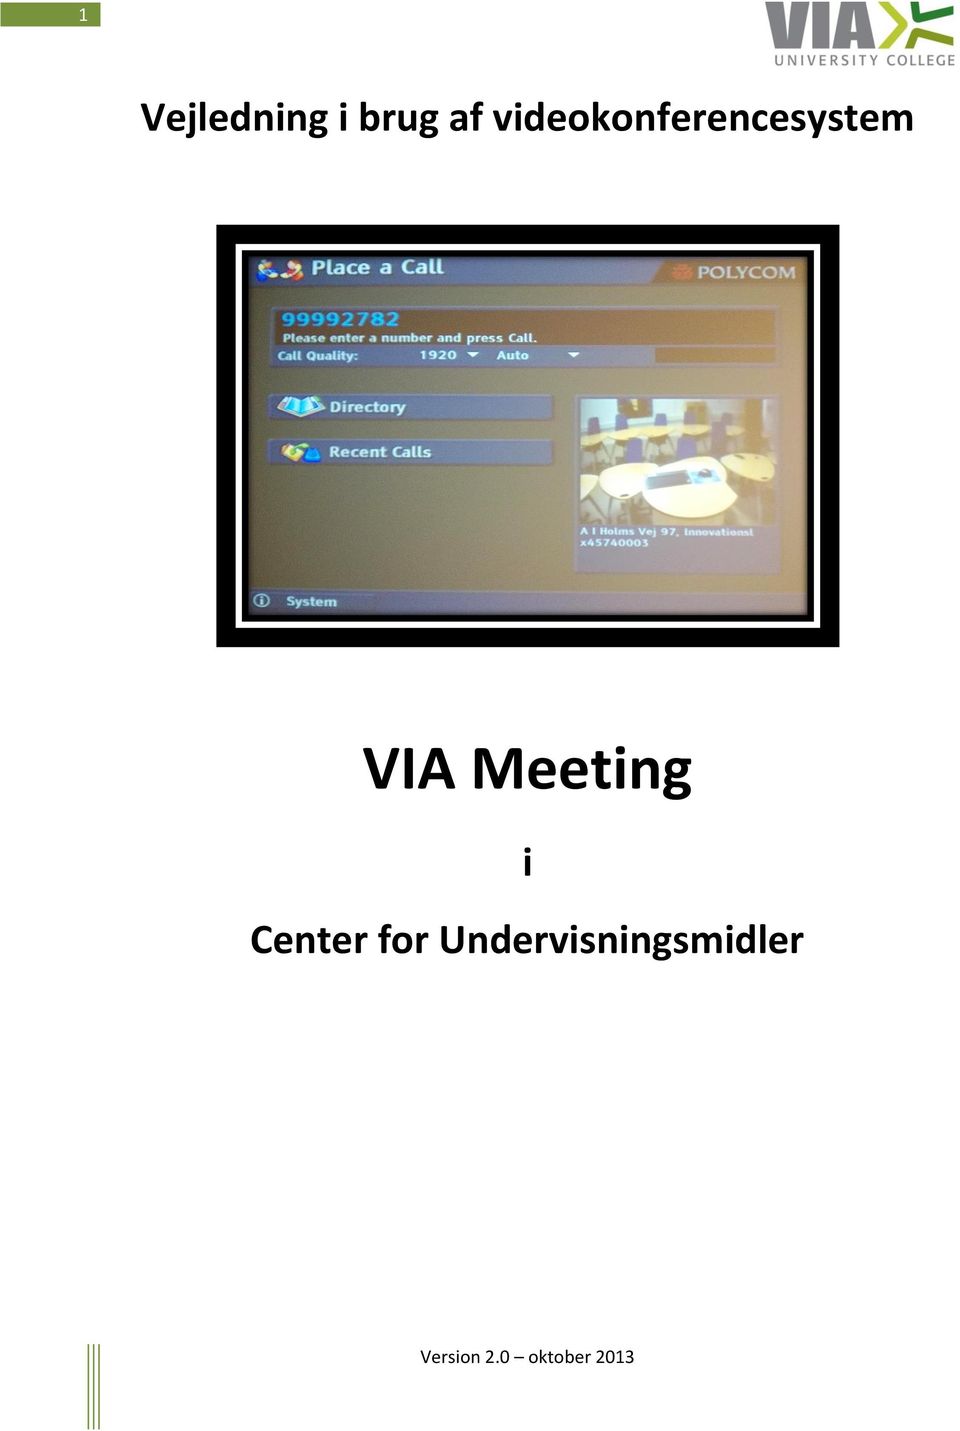 VIA Meeting i Center